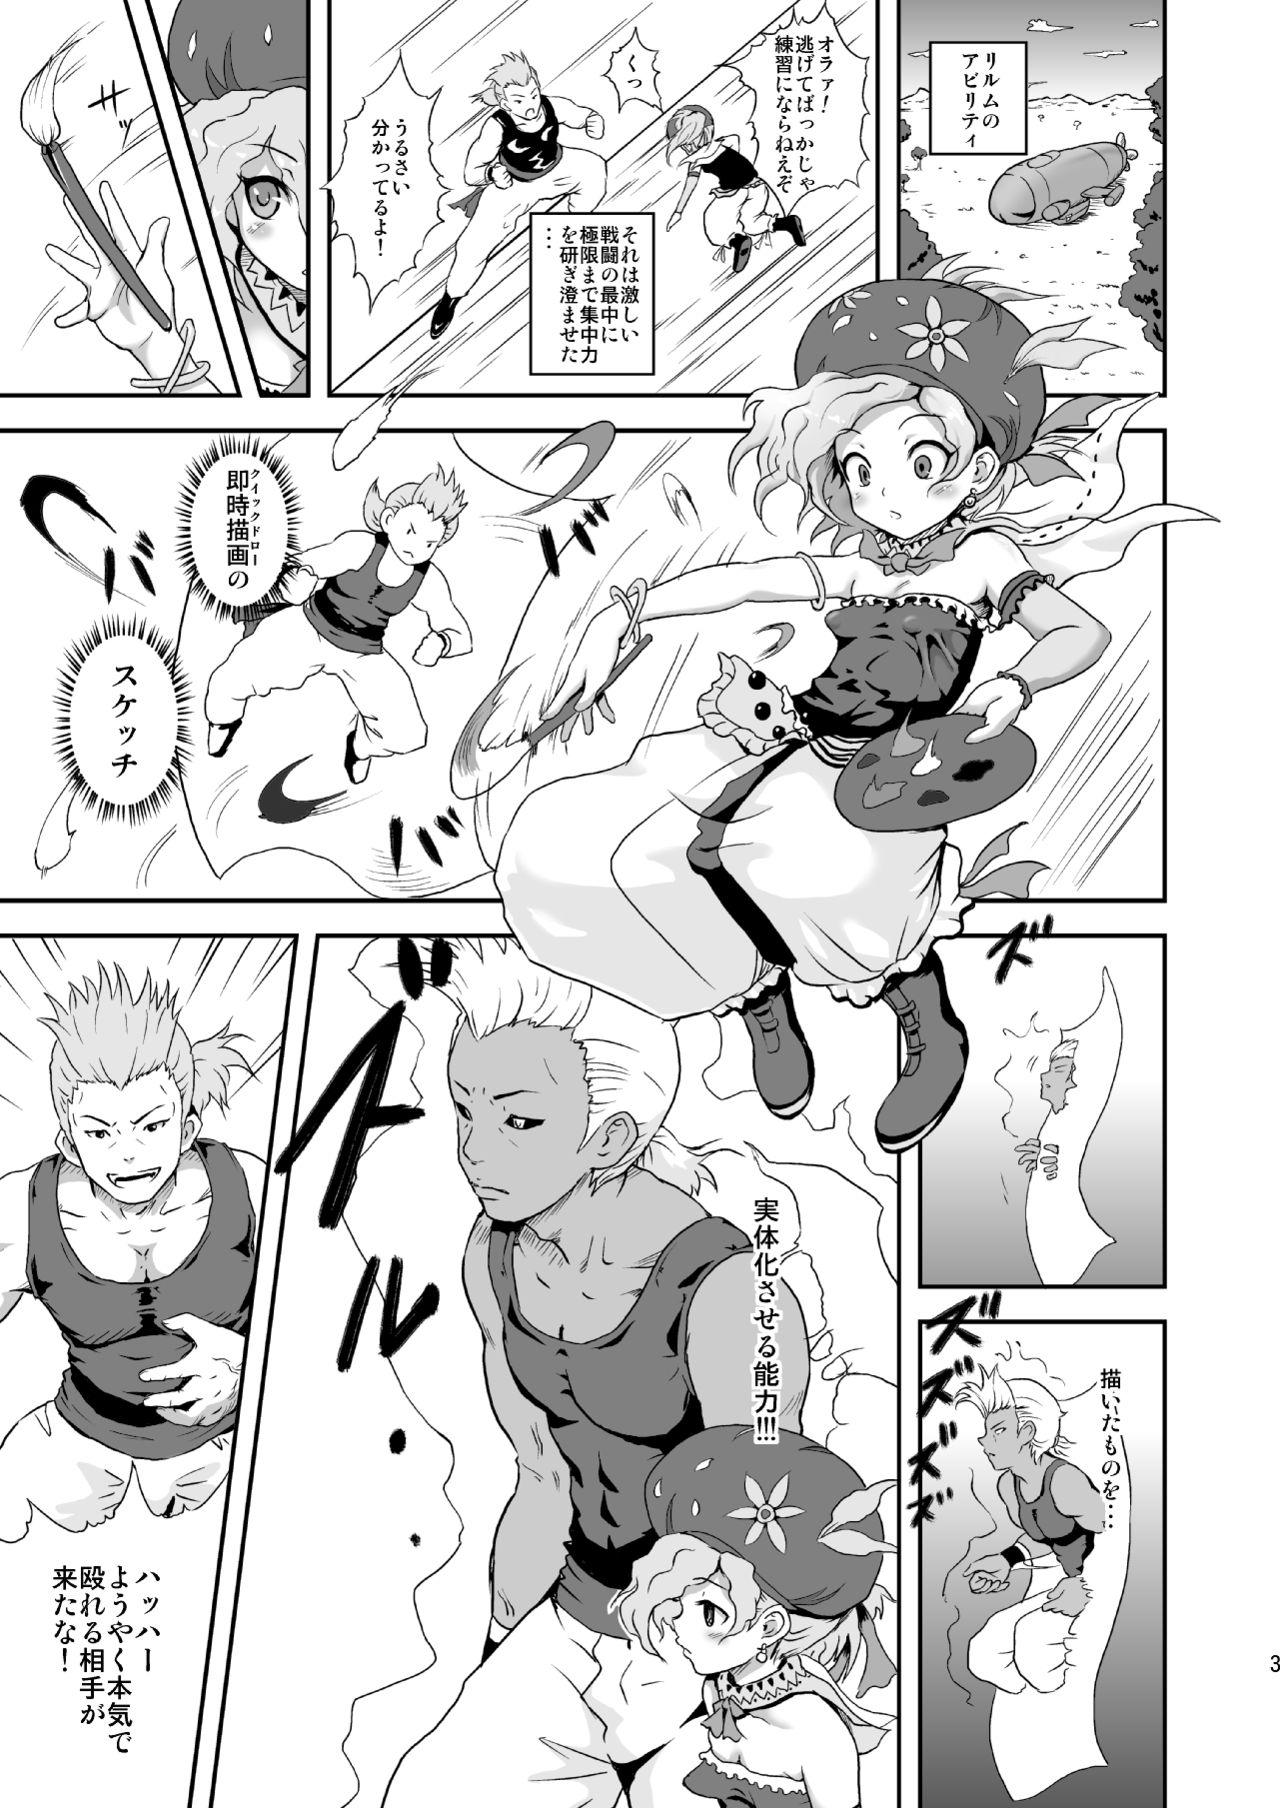 Heels Relm-tan no Hajirai Sketch - Final fantasy vi Clitoris - Page 2